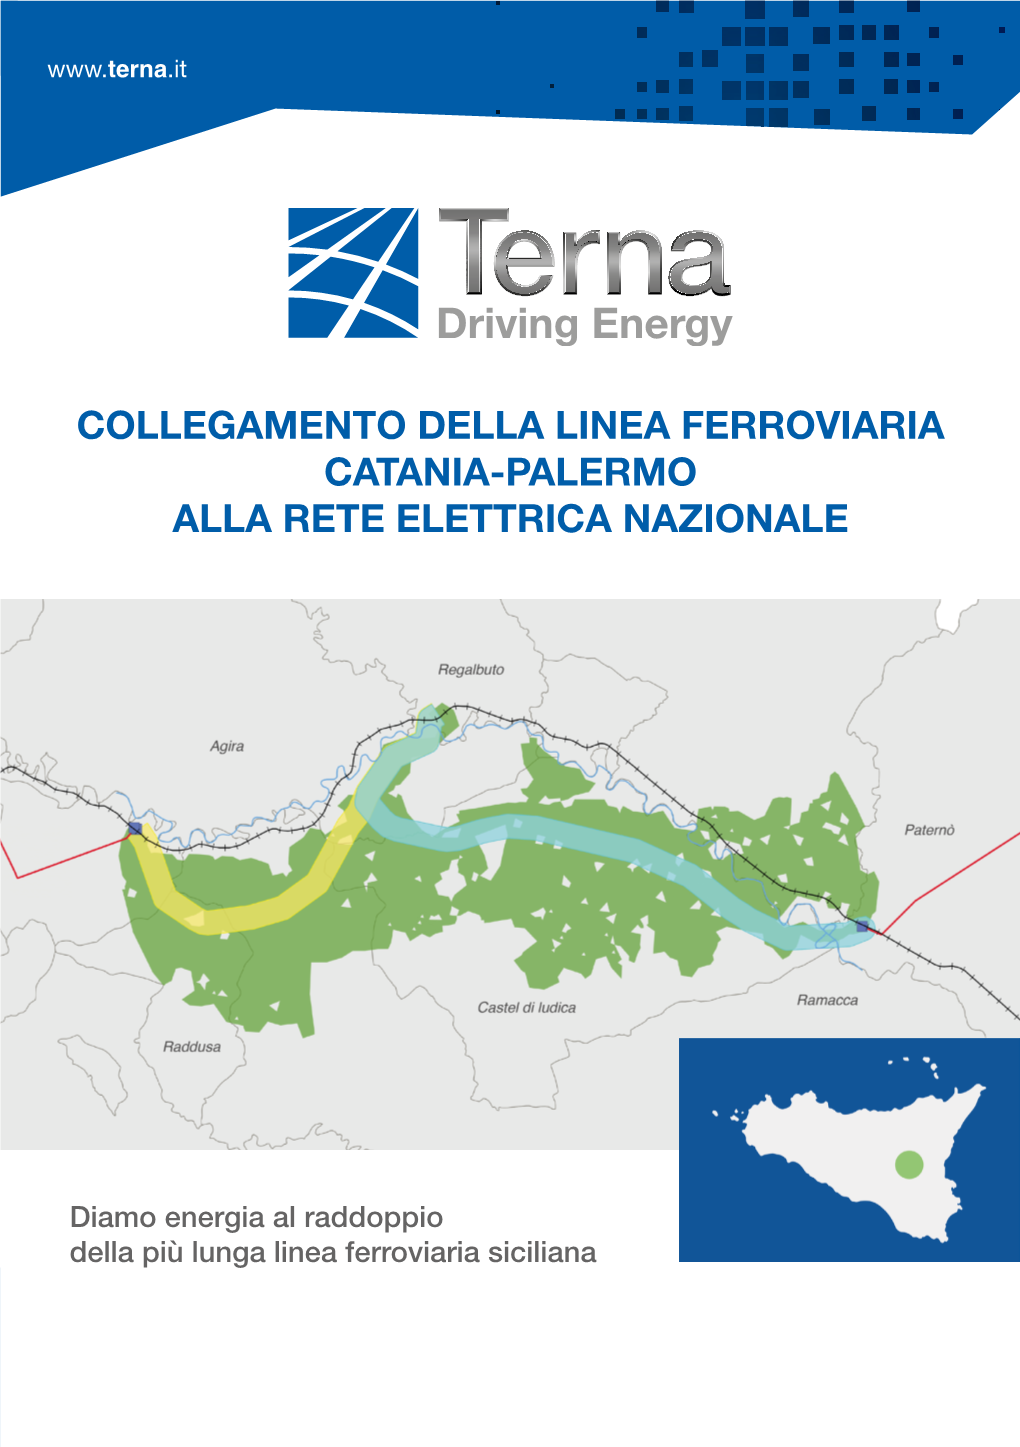 Collegamento Della Linea Ferroviaria Catania-Palermo Alla Rete Elettrica Nazionale